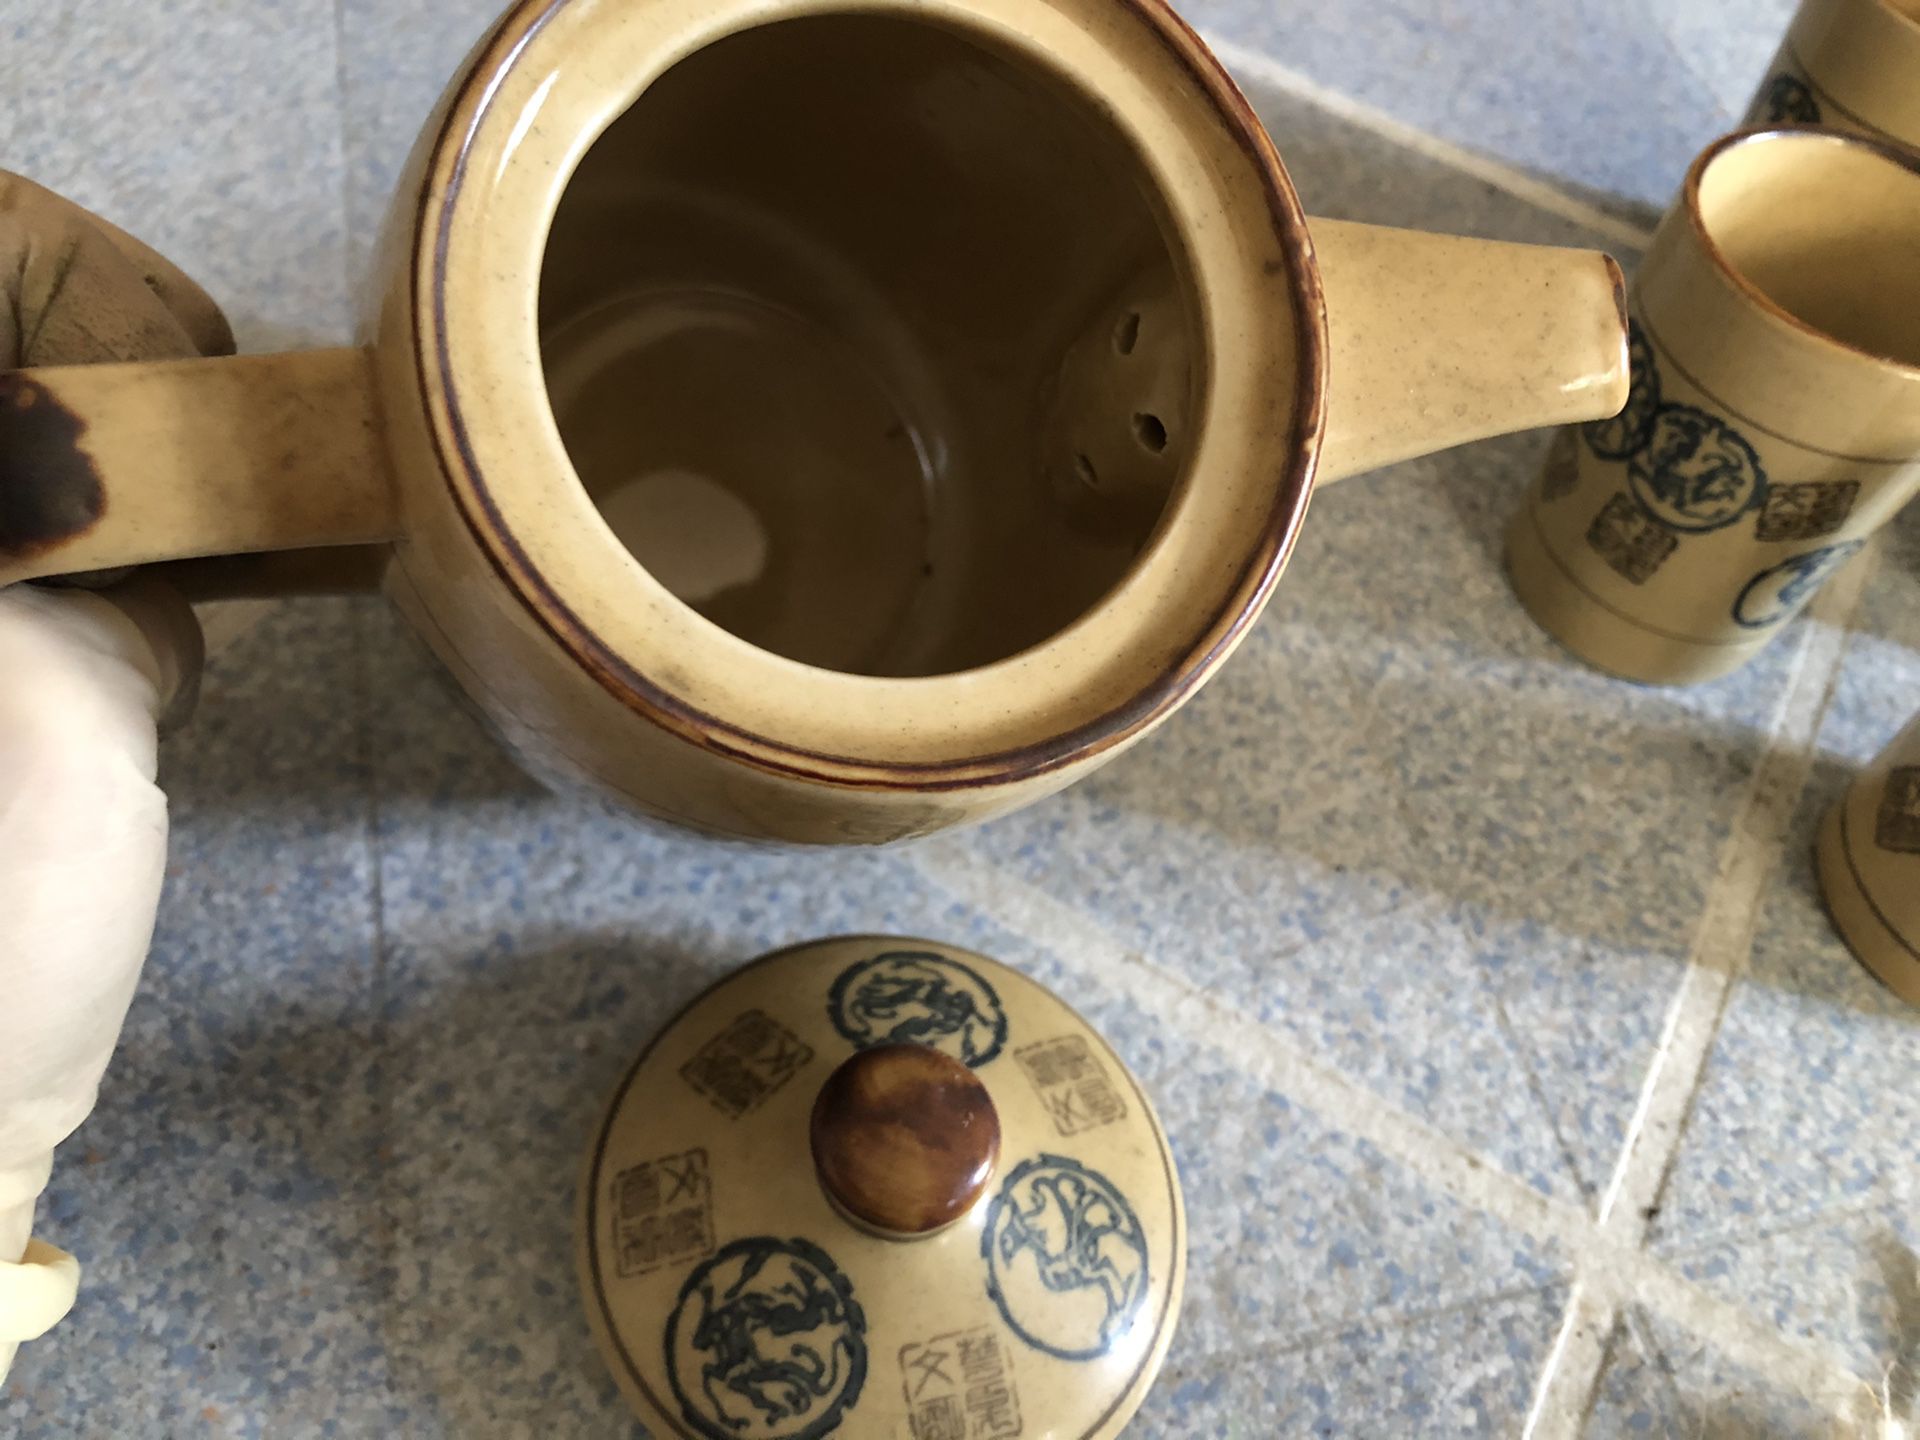 Chinese tea pot and tea cup set